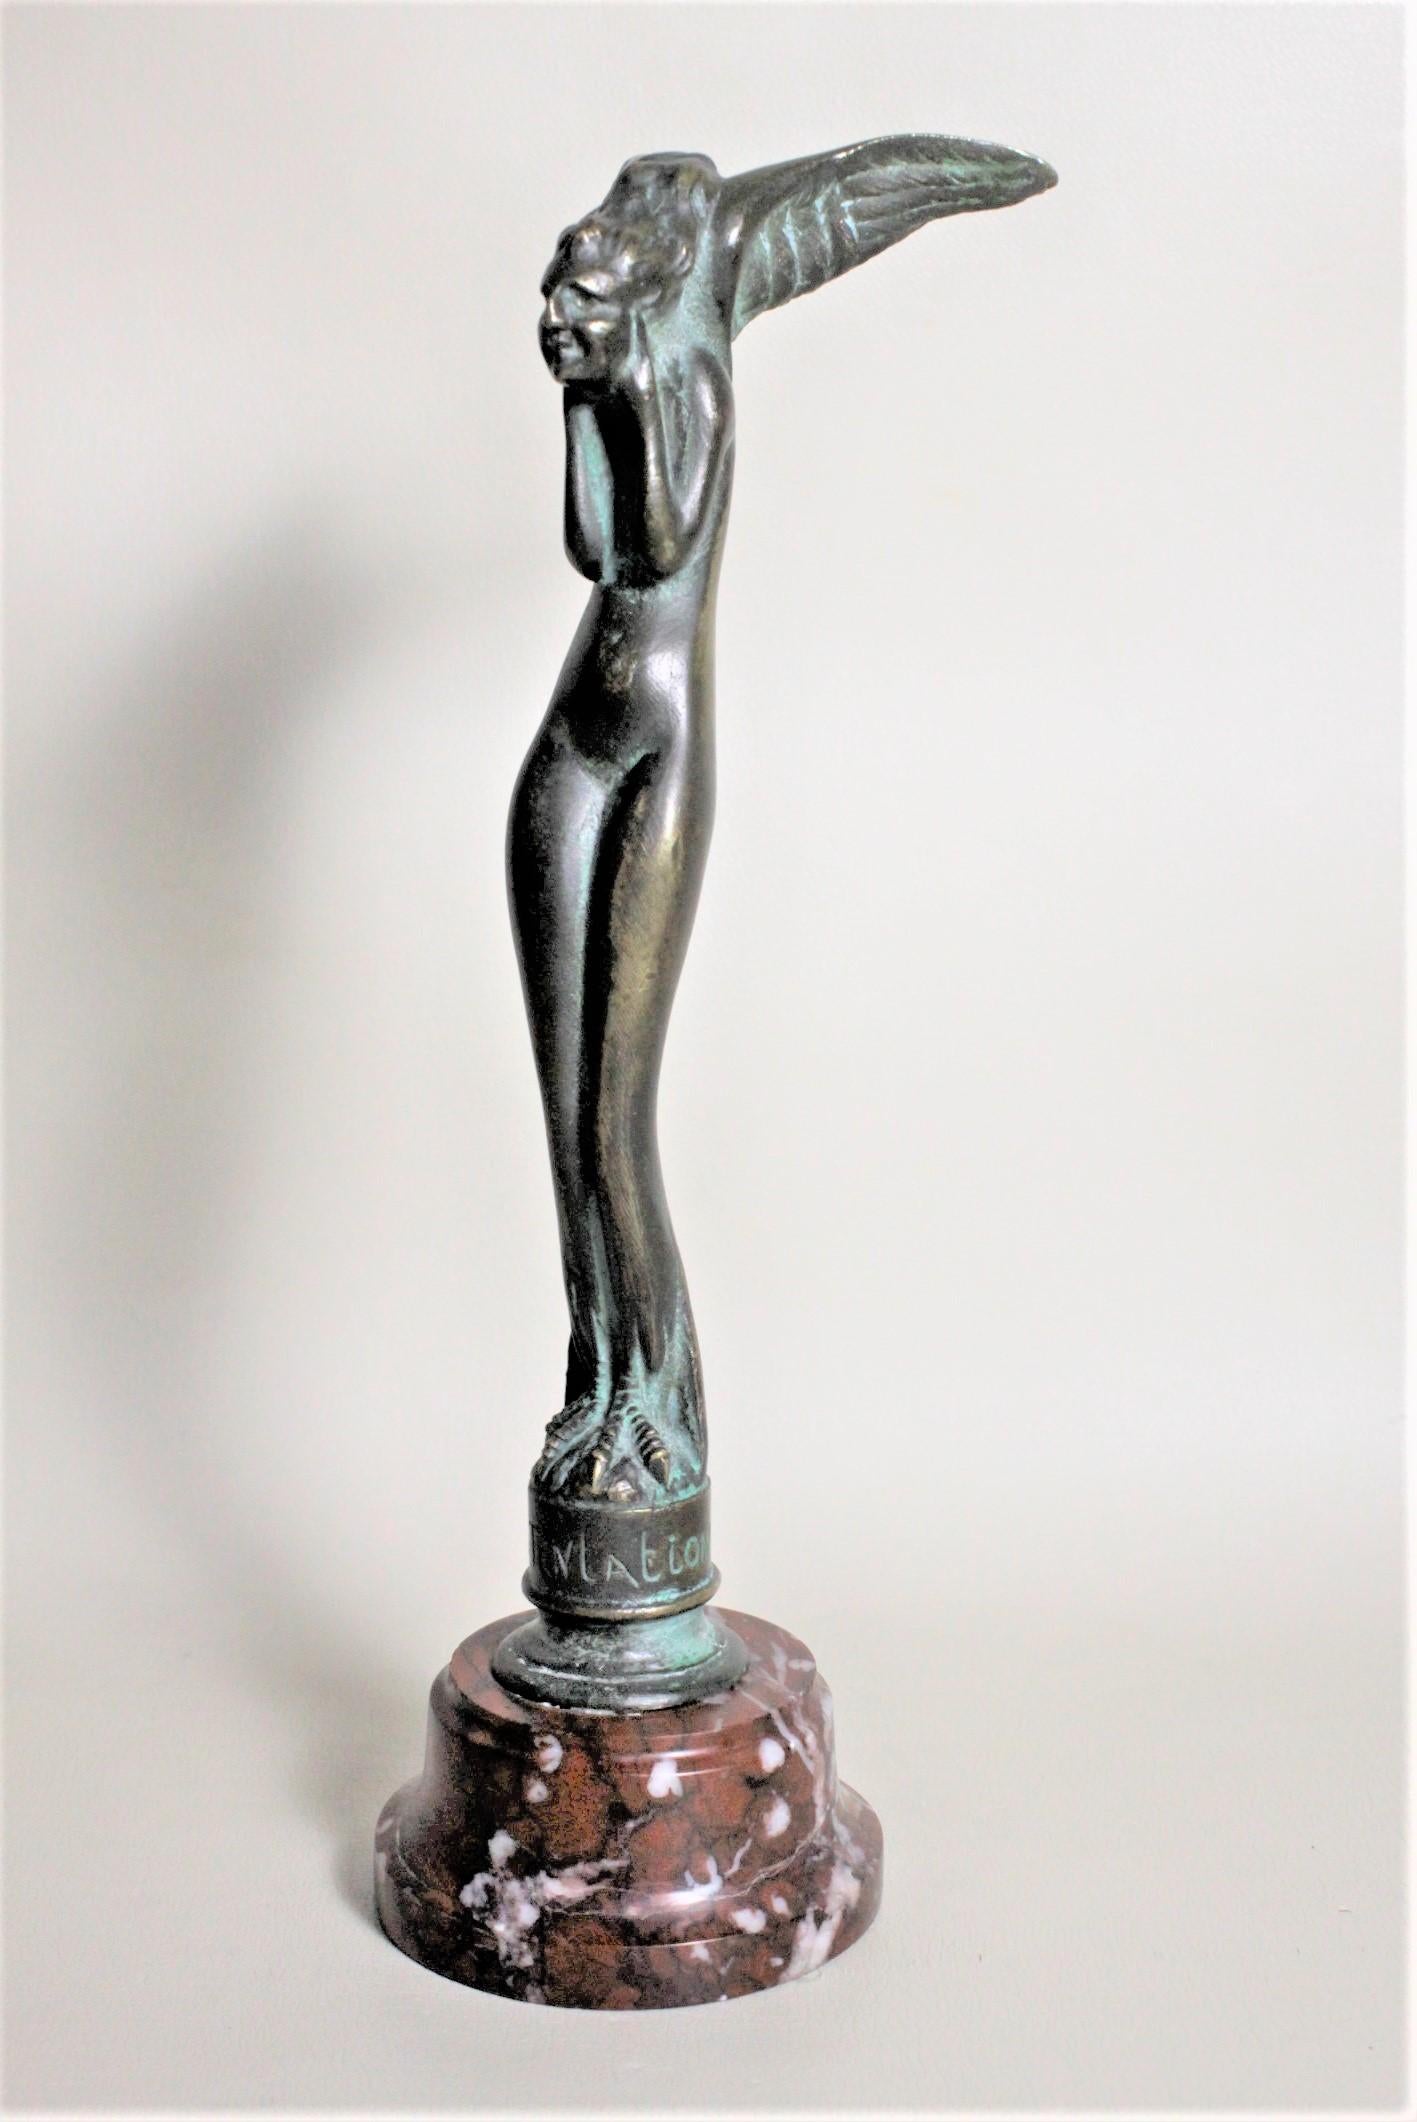 Cette sculpture Art déco en bronze patiné a été réalisée par Serge Zelikson en France vers 1920 dans le style déco de l'époque. Le bronze est coulé de manière ornementale et représente ce que certains ont appelé un ange. Il s'agit d'un corps féminin